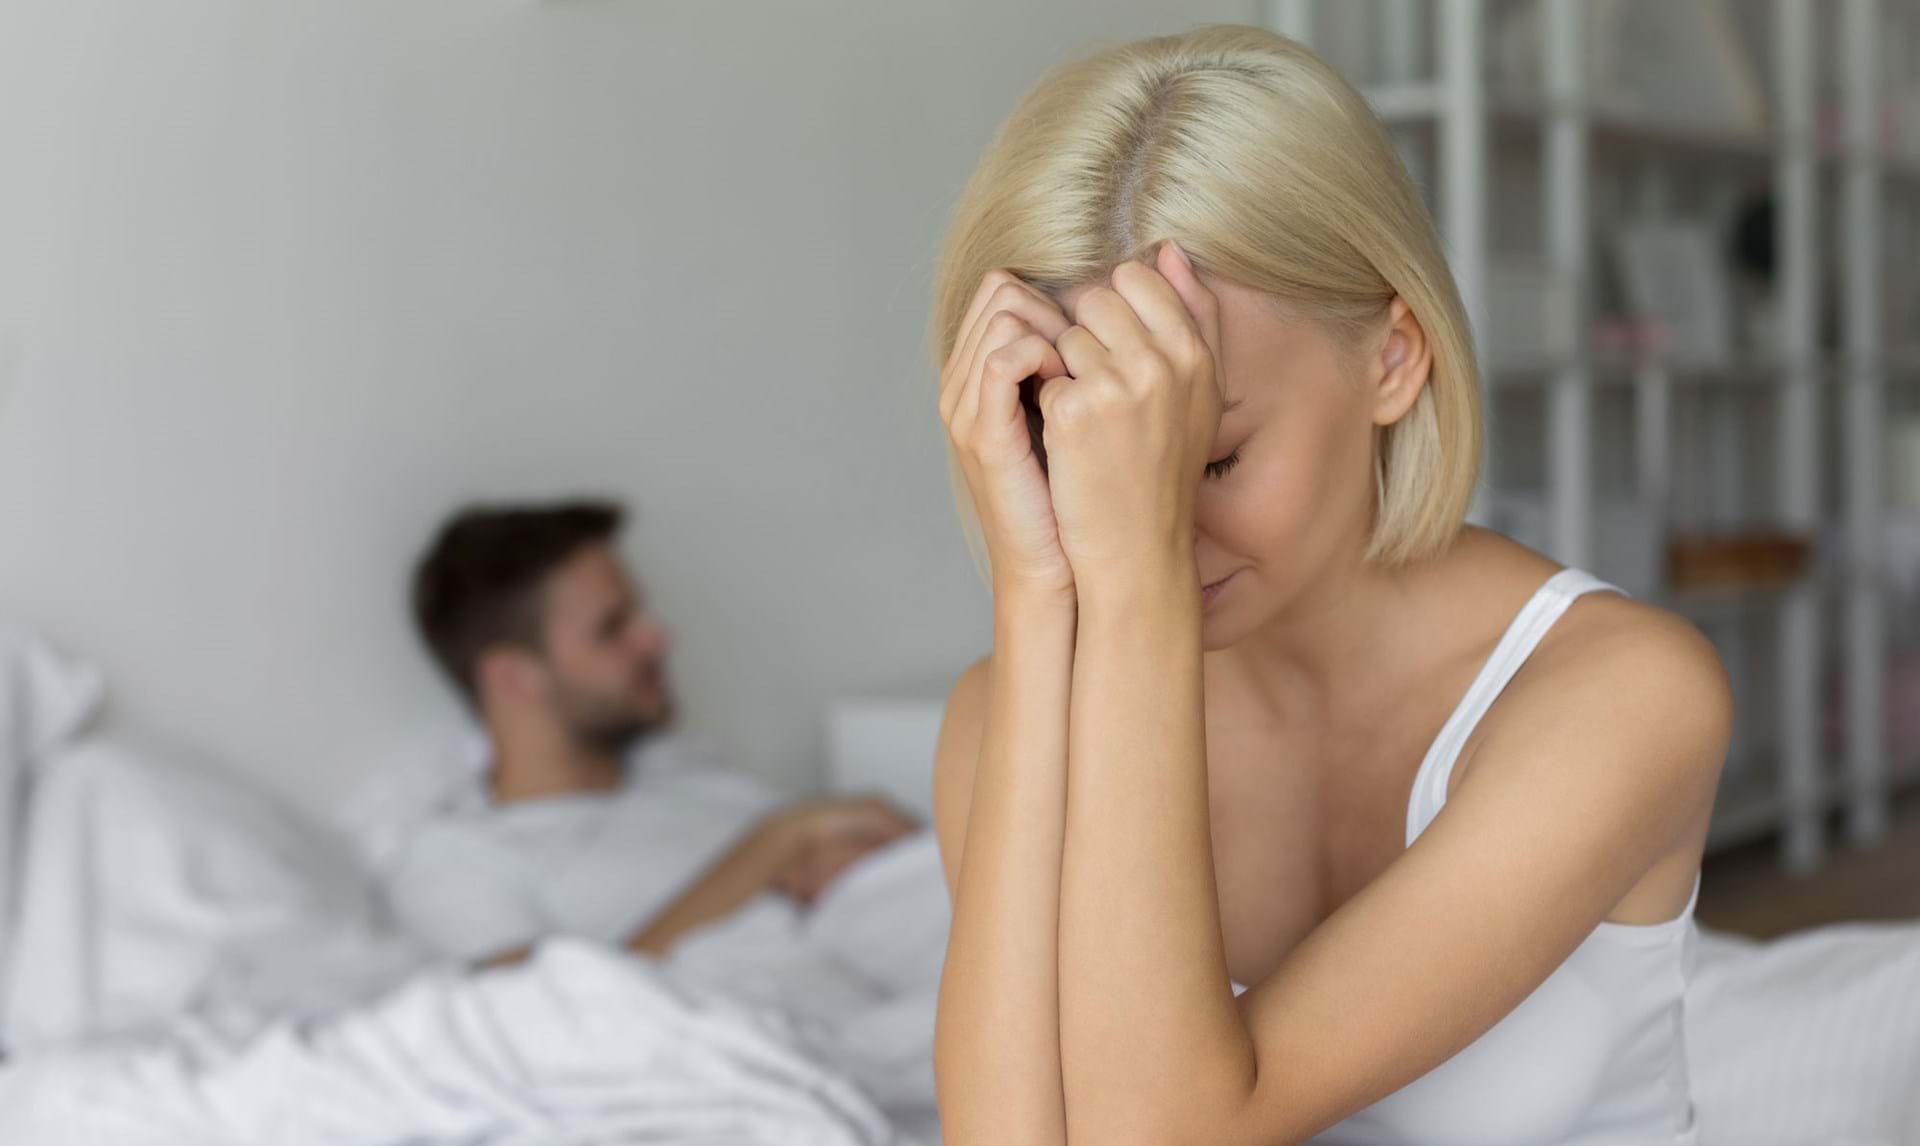 Det er billigt Rend Hurtigt Min mand er utro, men jeg har ikke lyst til at forlade ham” - ALT.dk